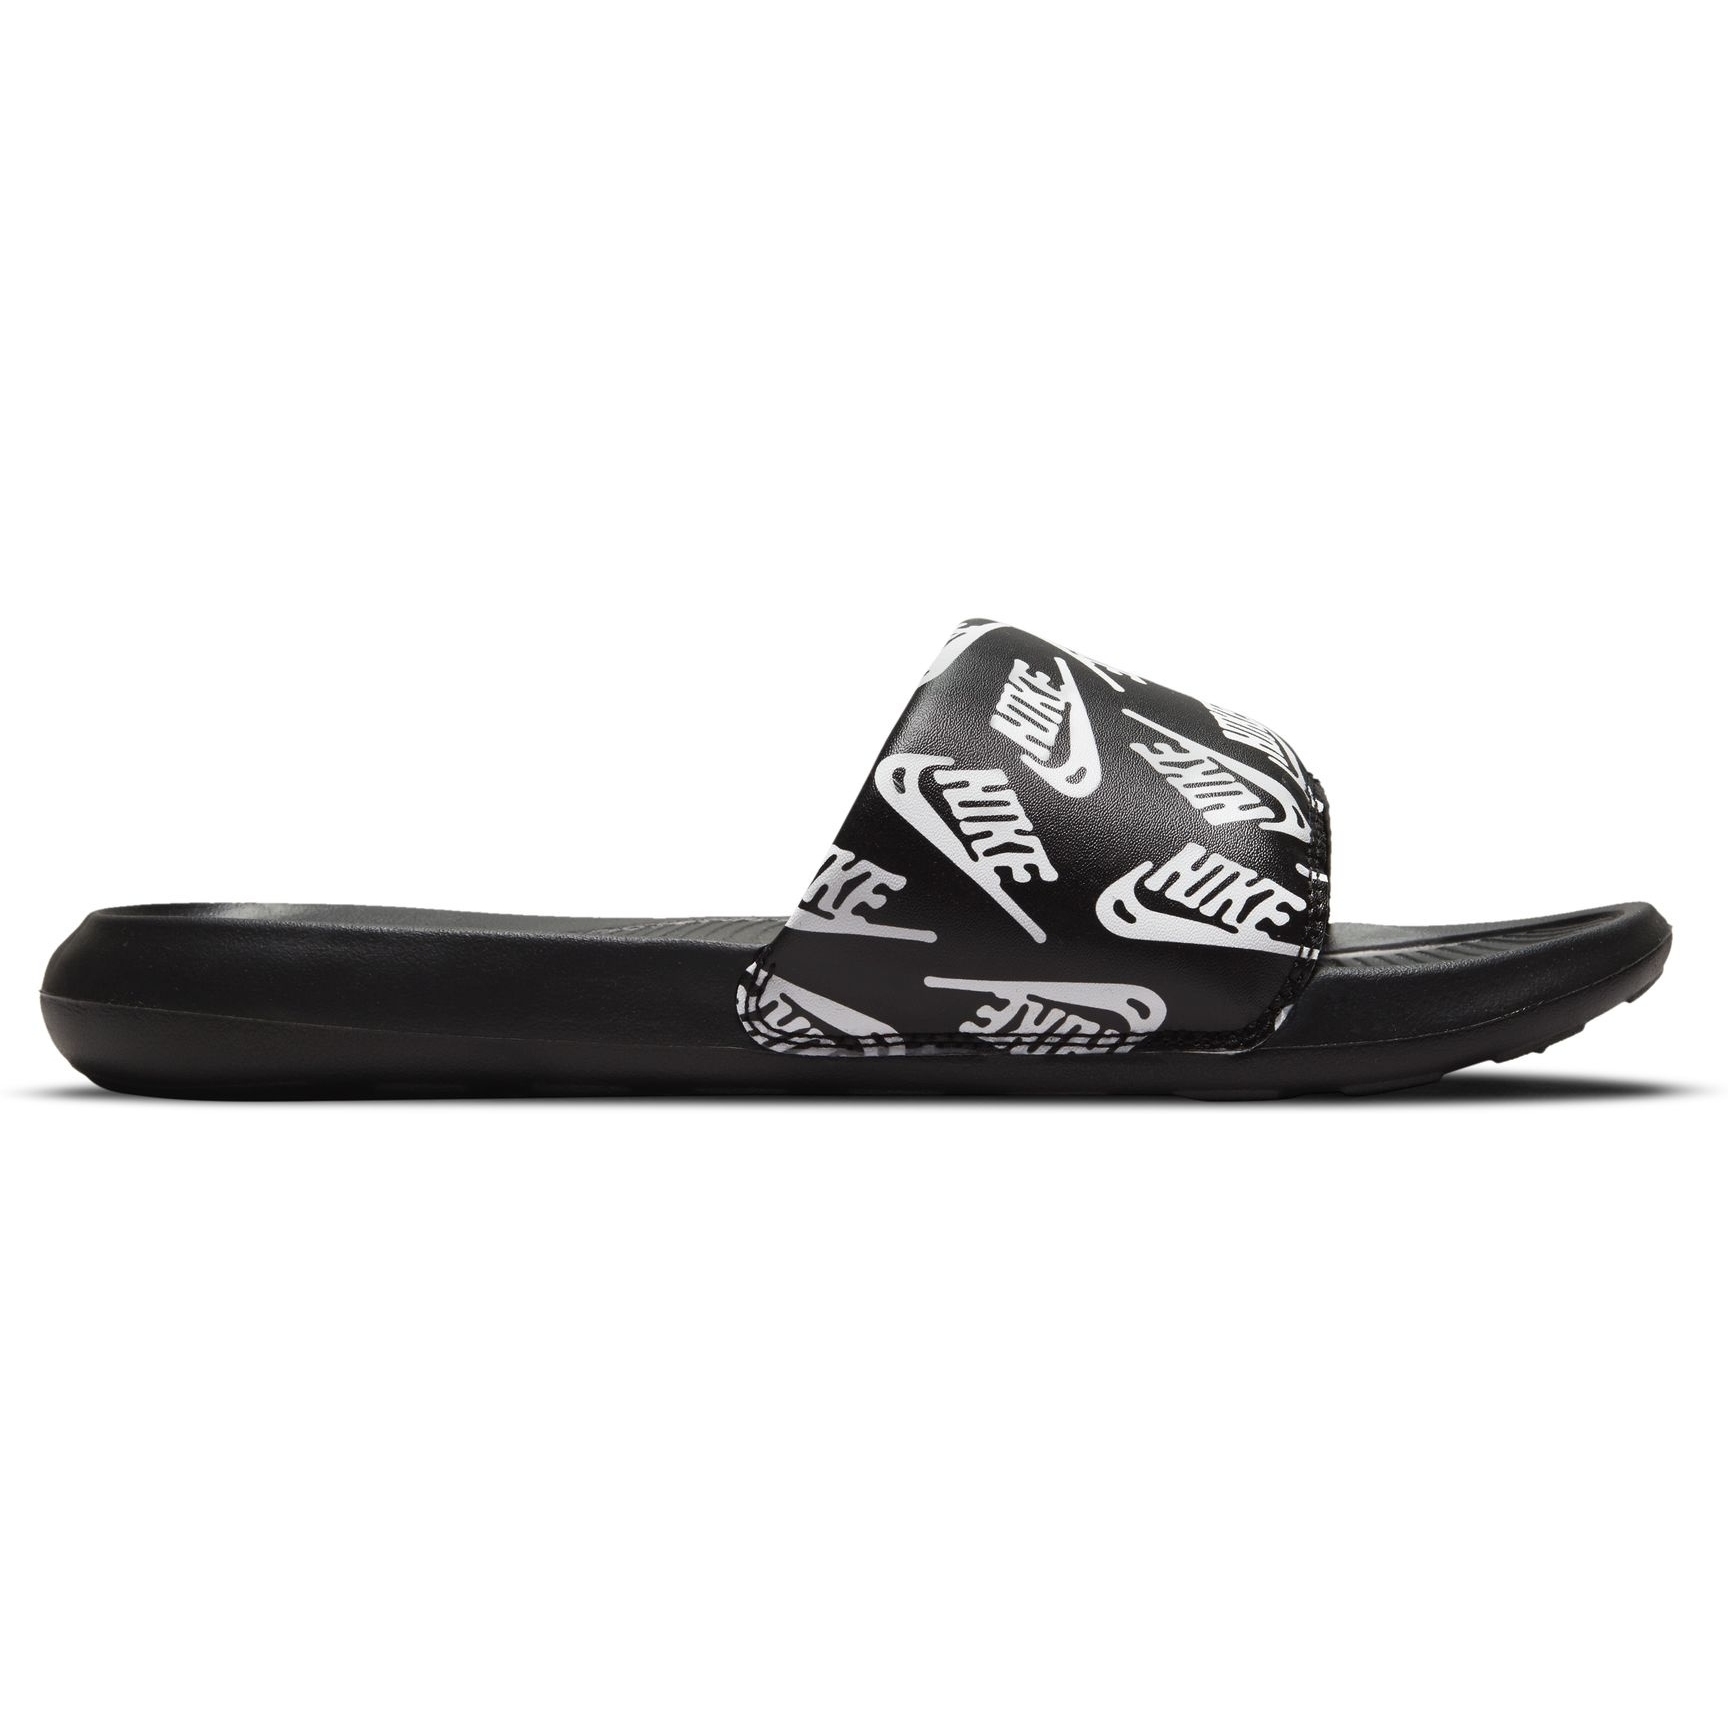 Produktbild von Nike Victori One Slides mit Print Herren - schwarz/weiß-schwarz CN9678-008